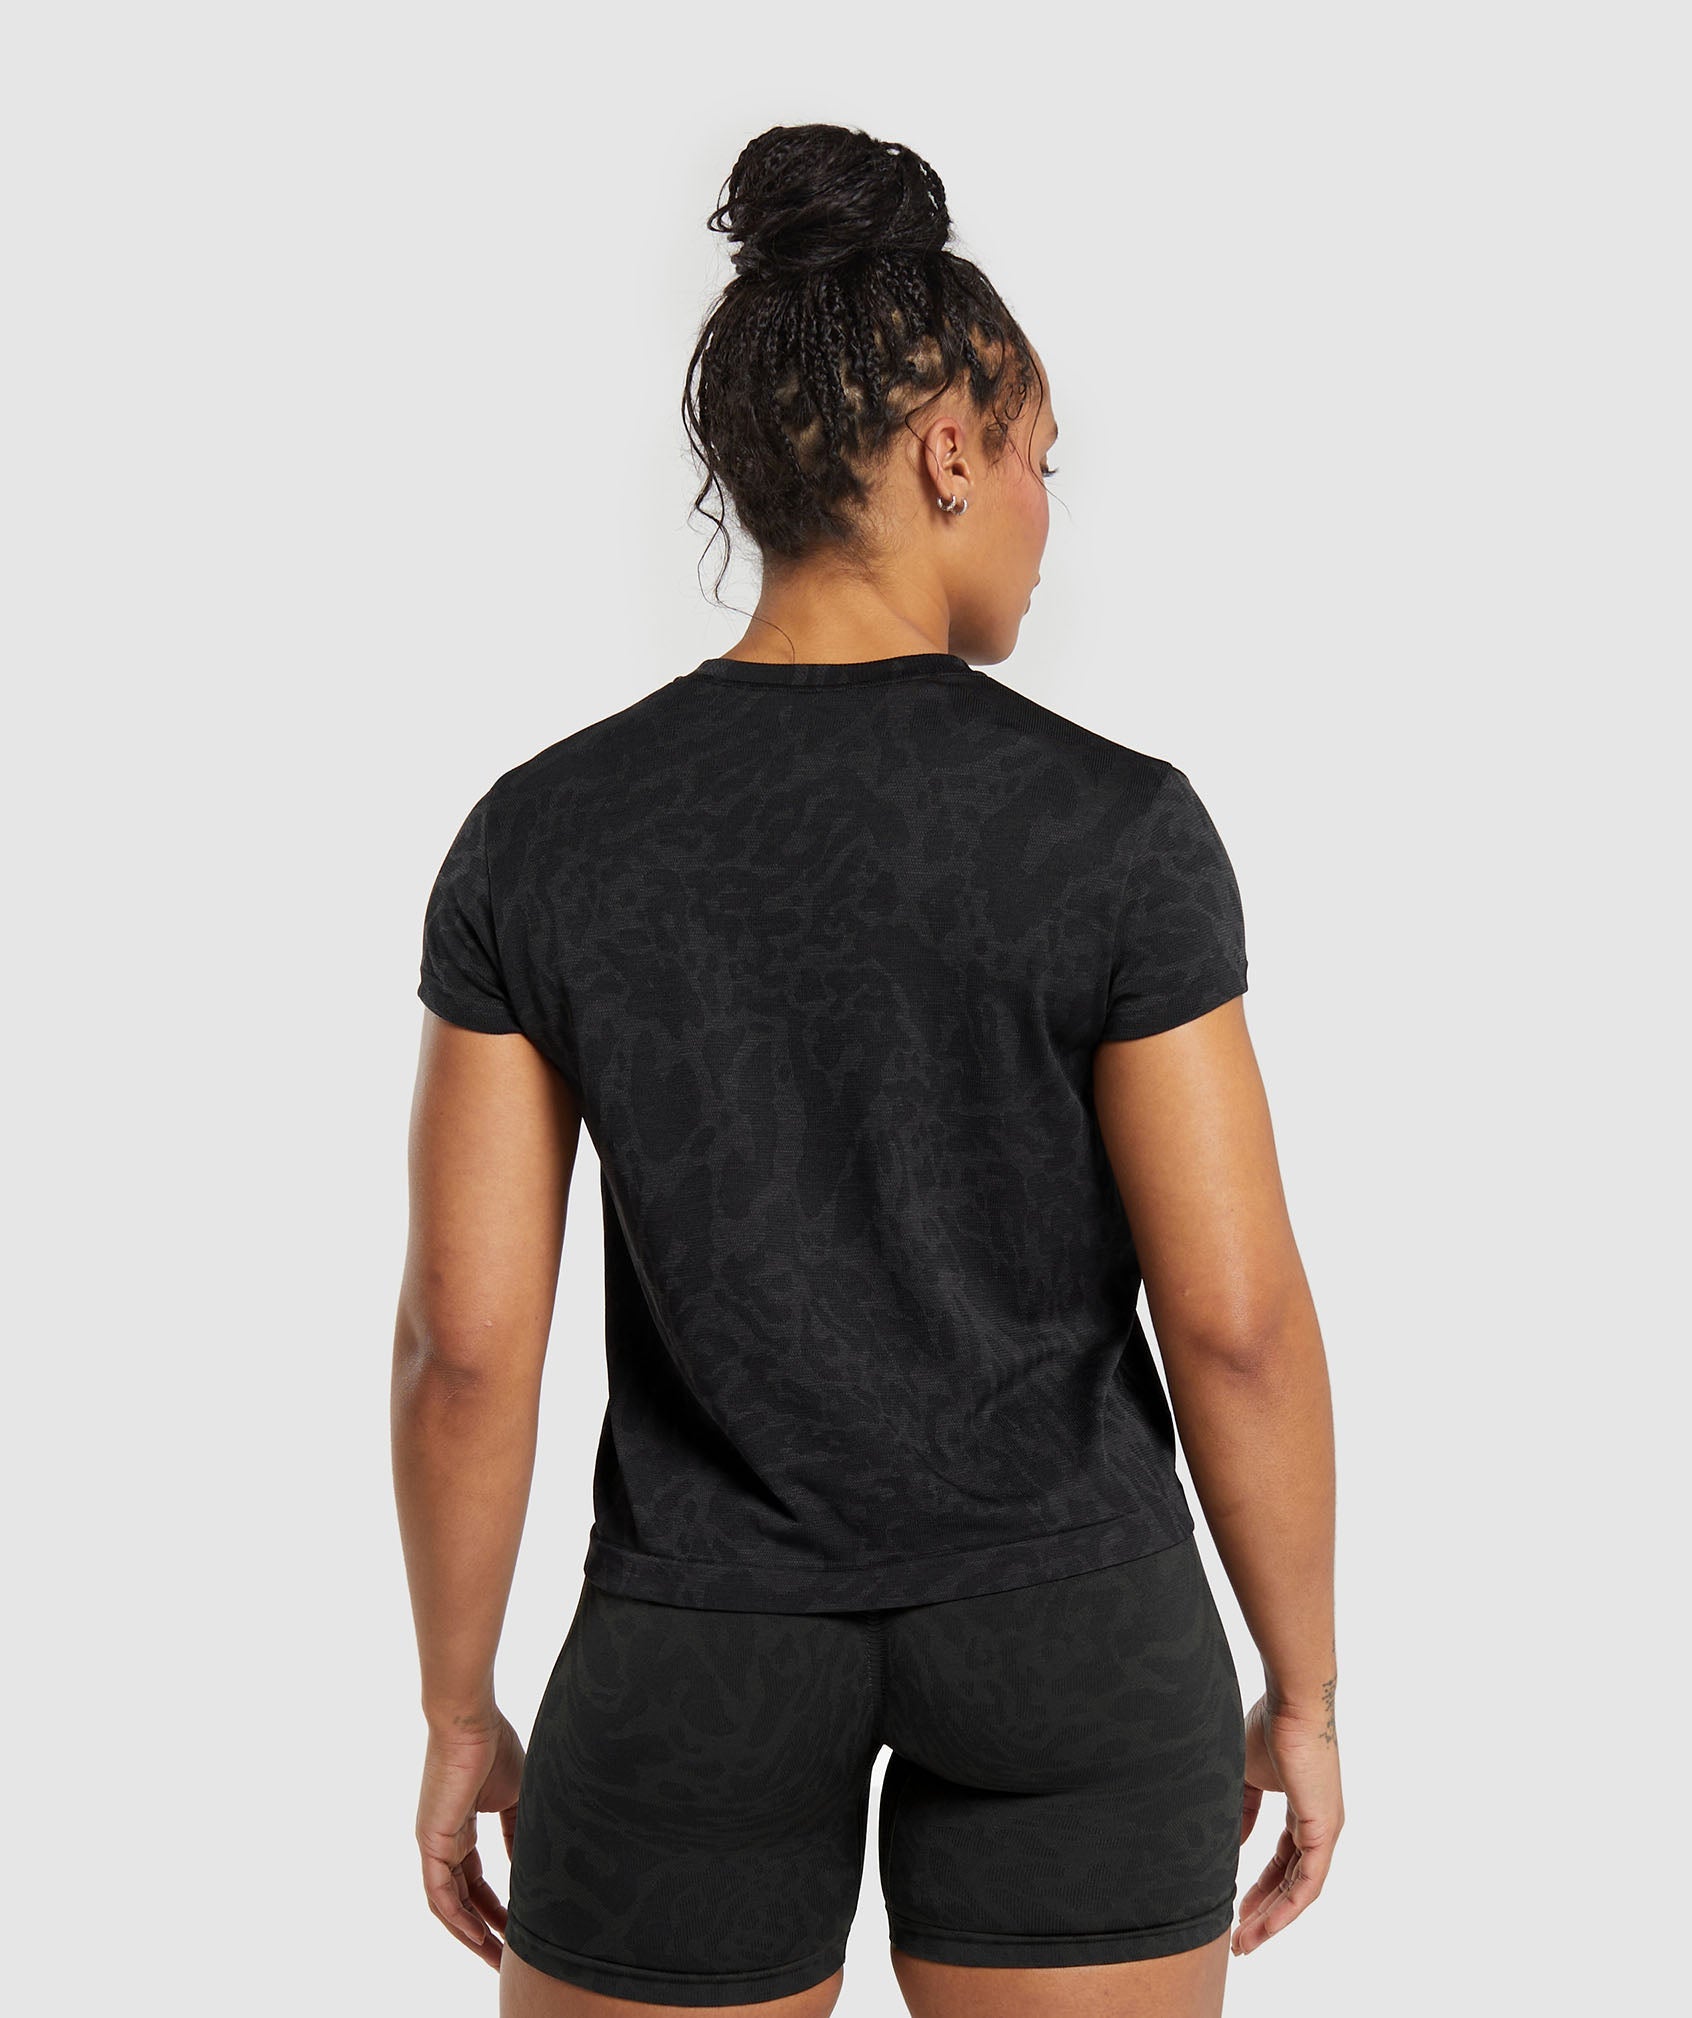 Adapt Safari Seamless T-Shirt in Black/Asphalt Grey - view 2